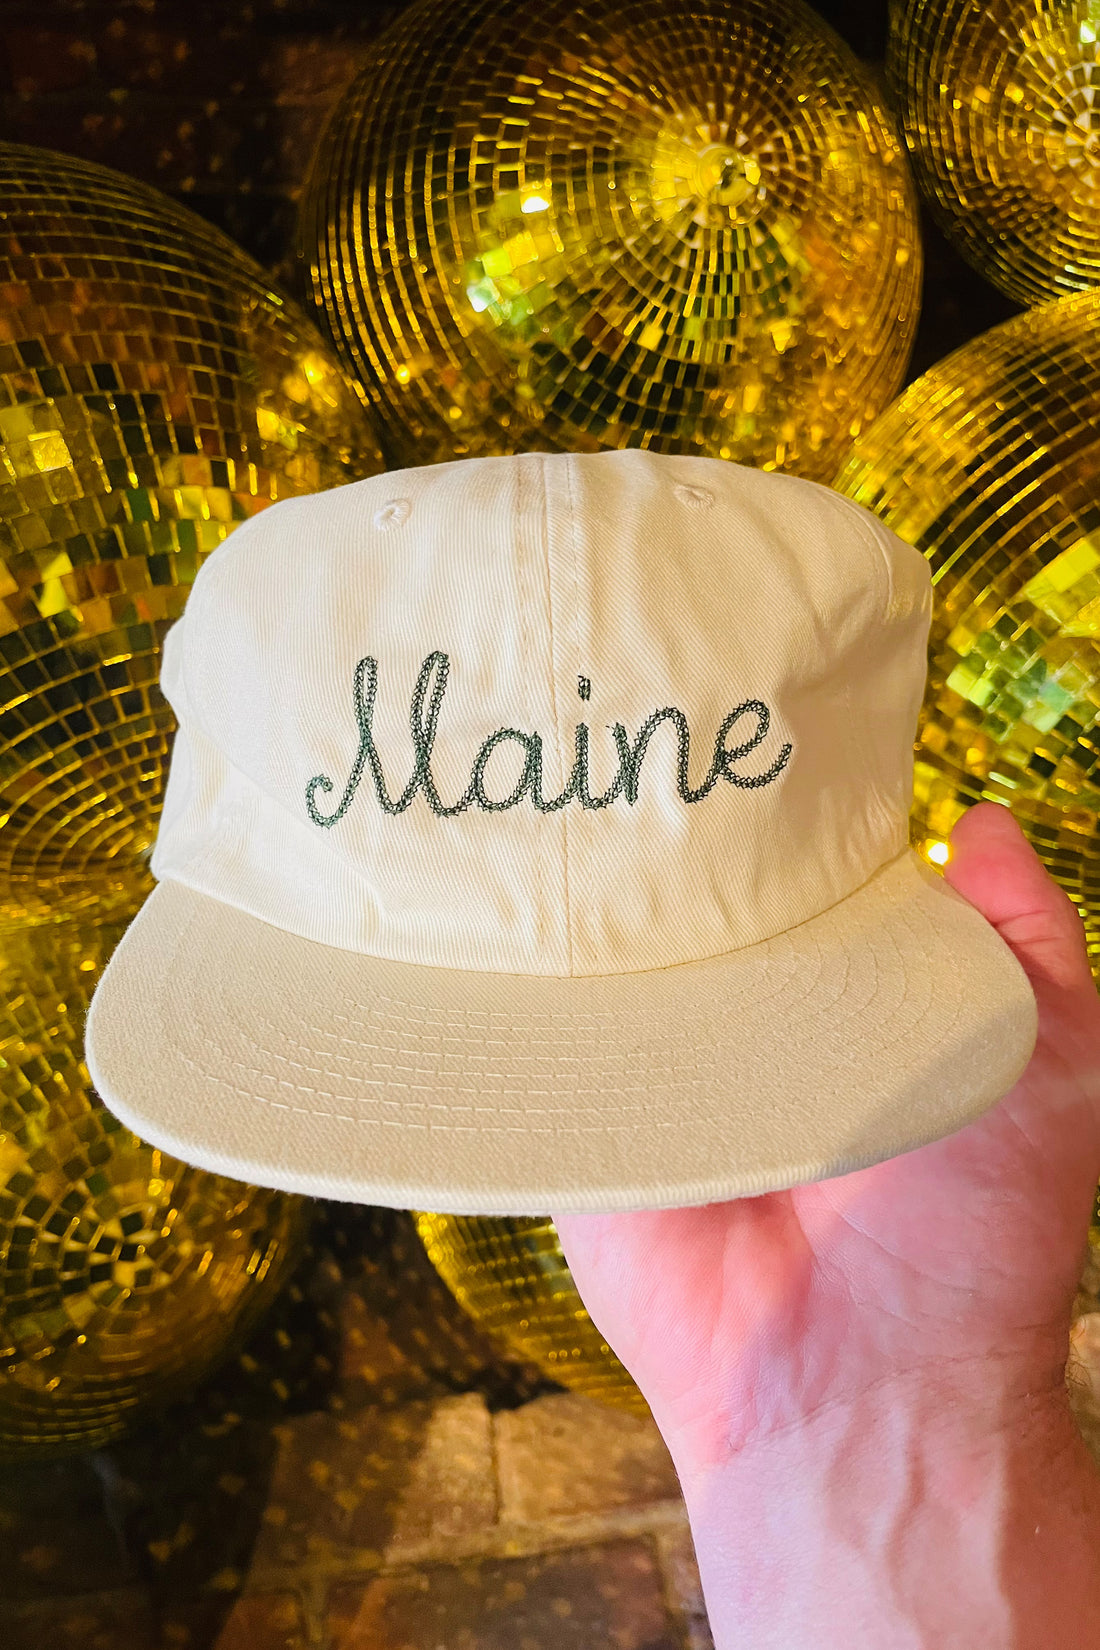 Evangeline 'Maine' Flat Brim Hats